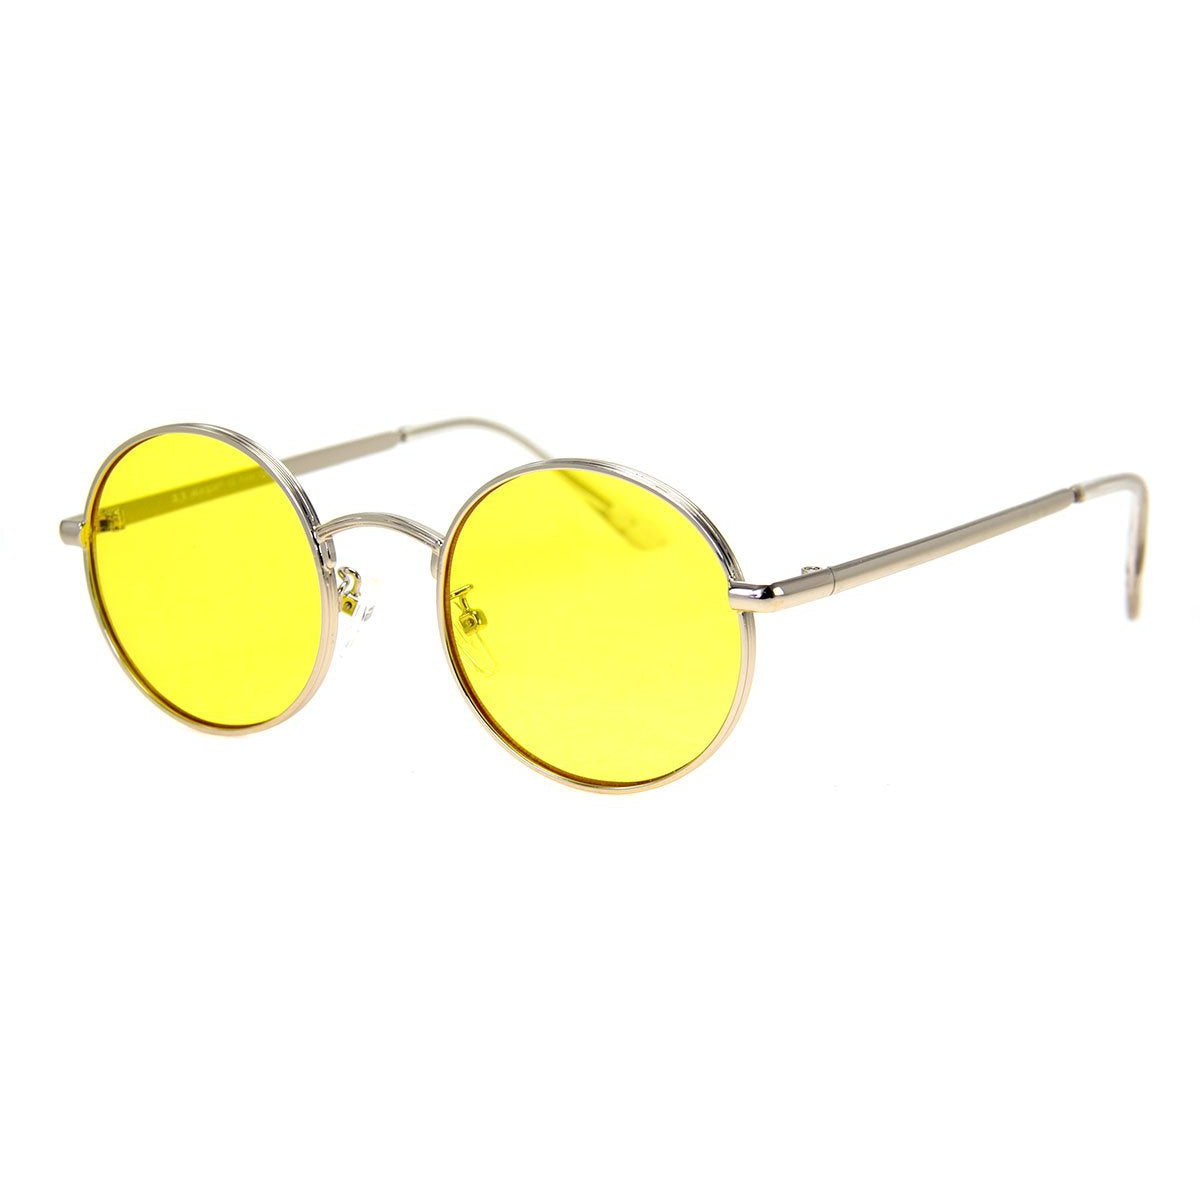 Aleko Sunglasses - Silver/Yellow